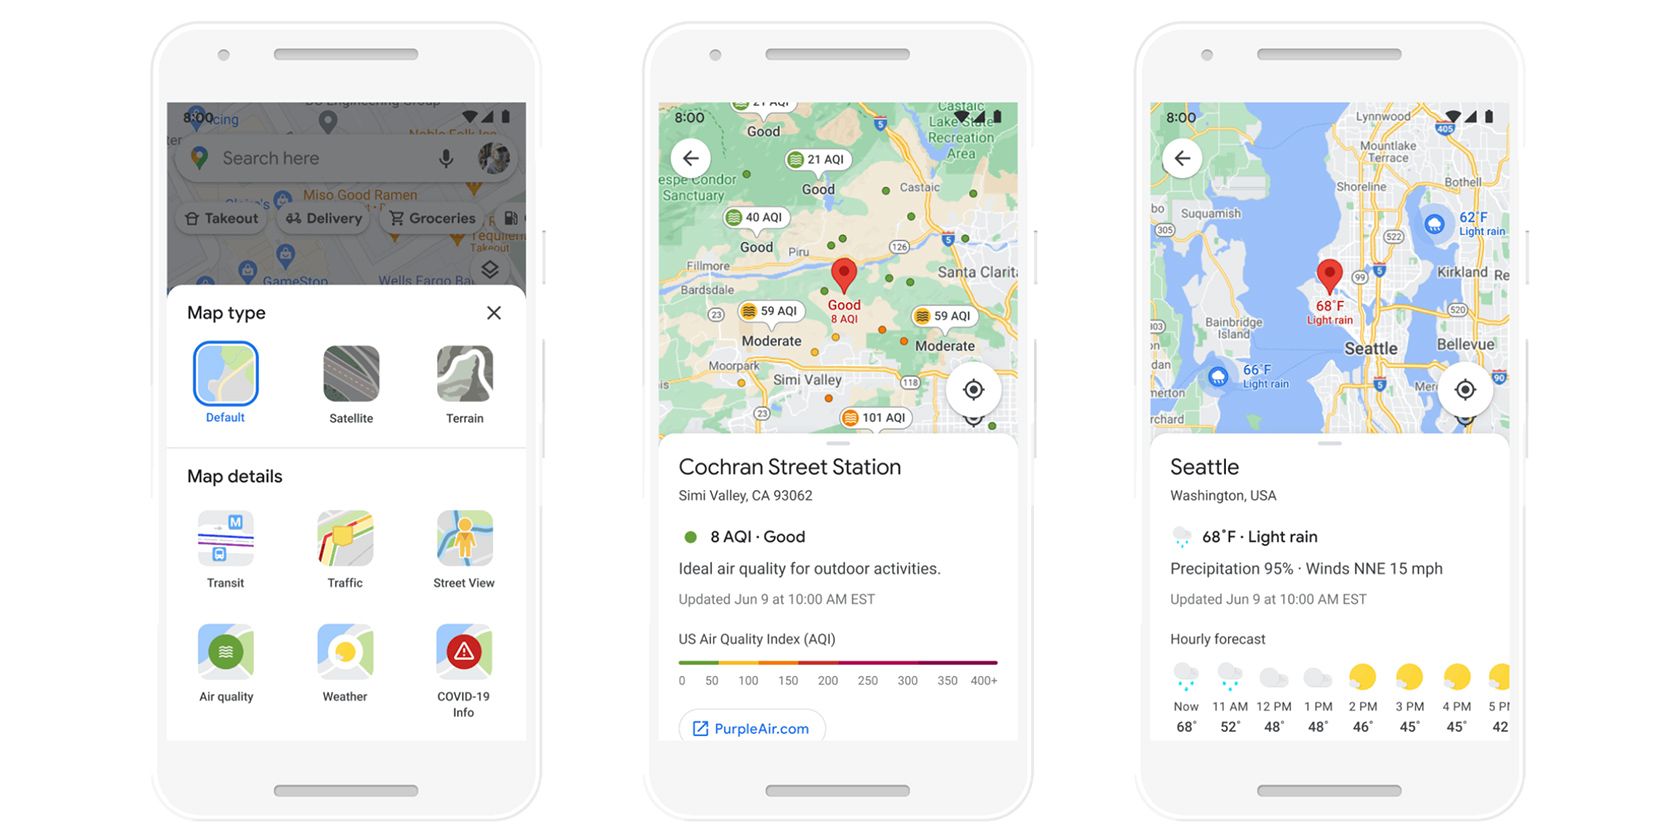 Google Maps AI